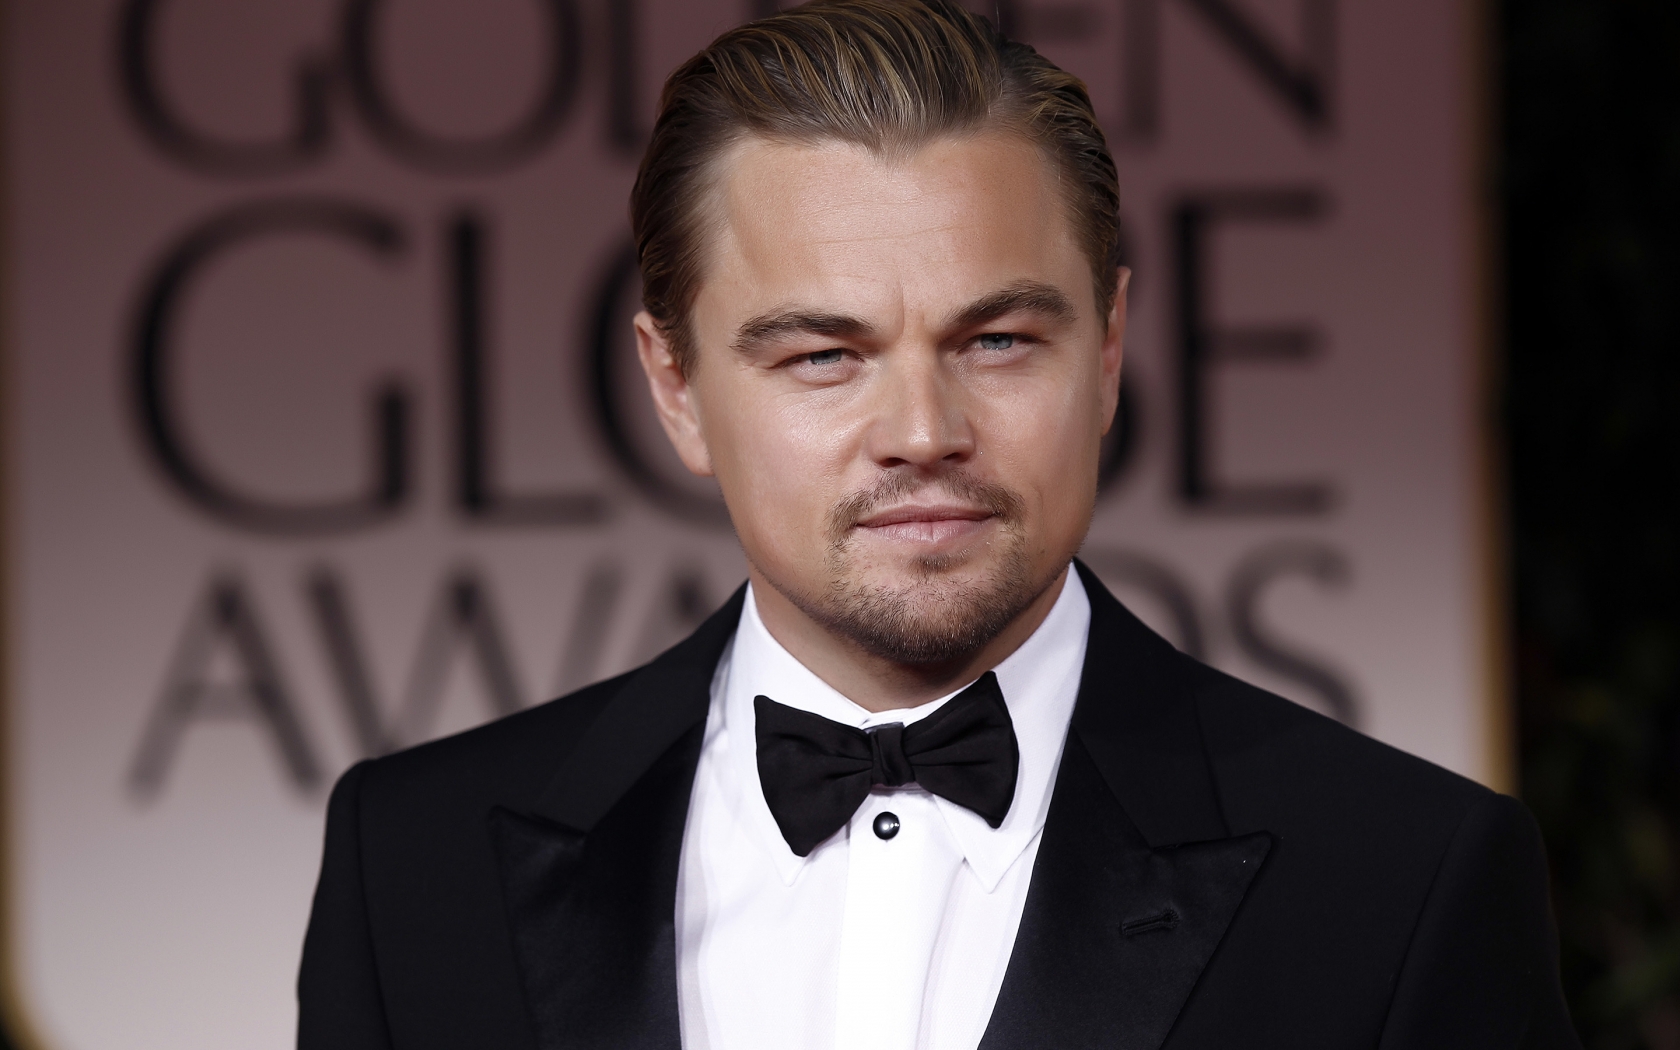 Leonardo DiCaprio in Tuxedo for 1680 x 1050 widescreen resolution